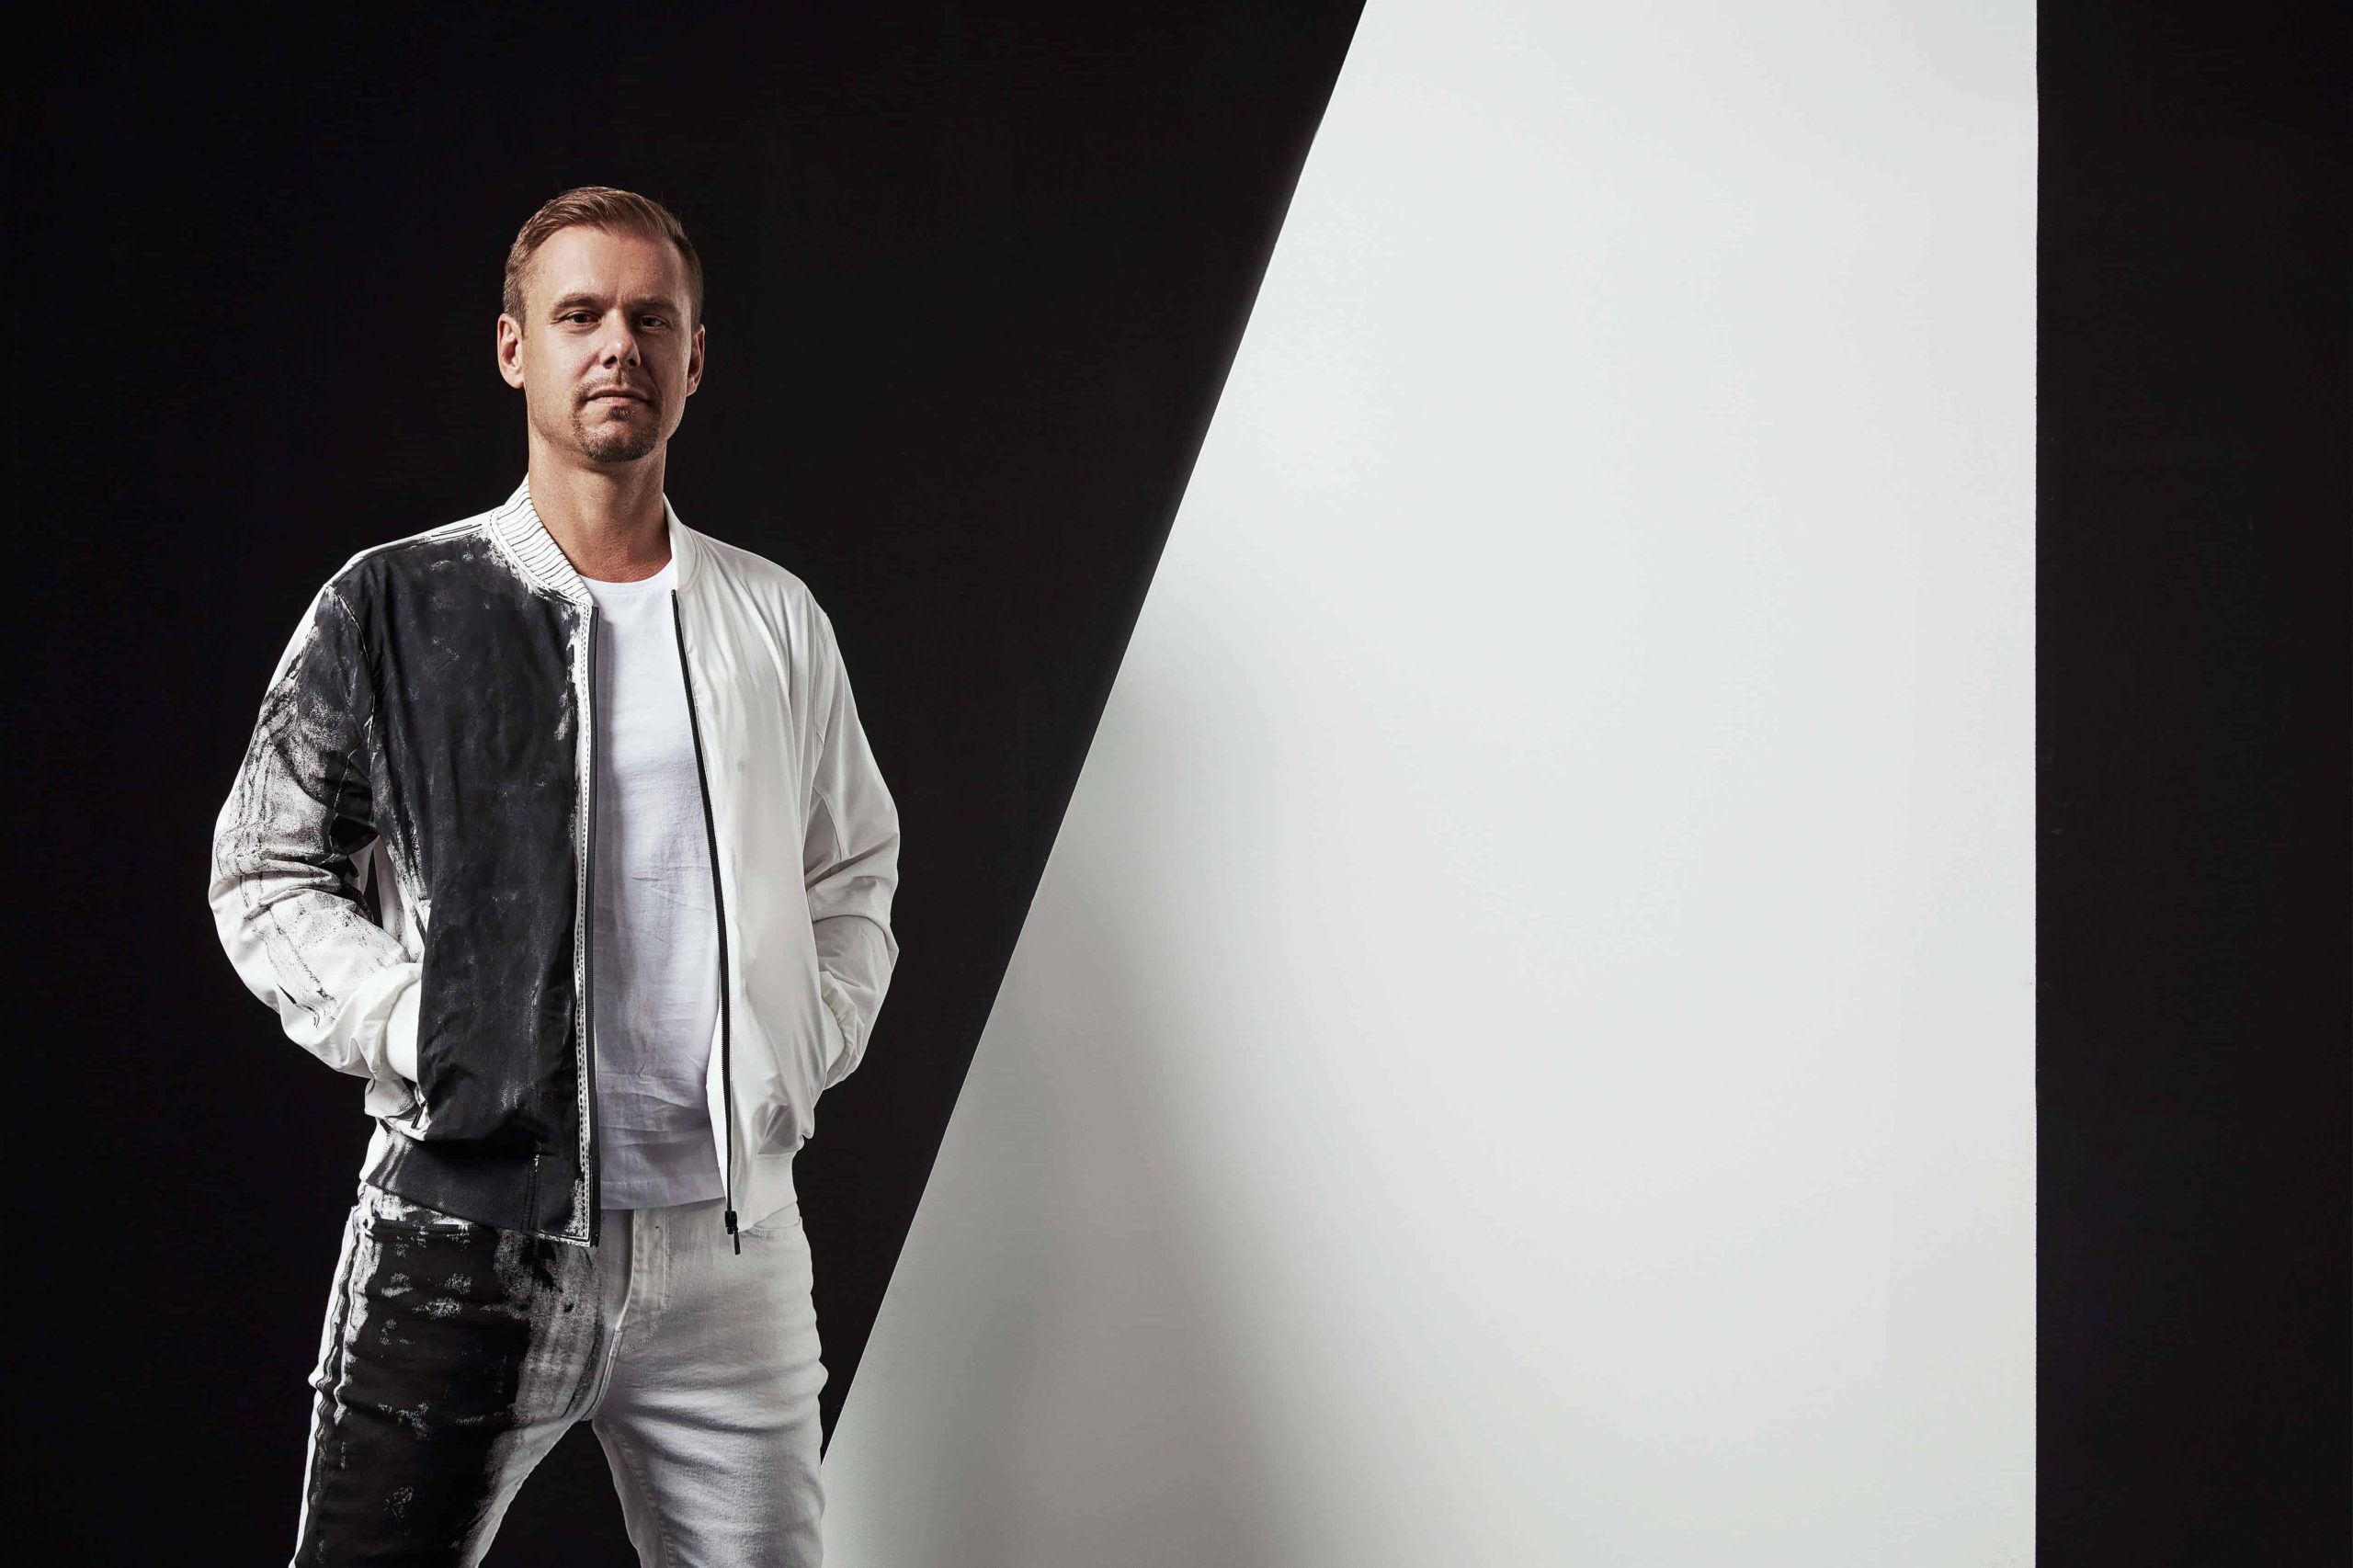 Armin van Buuren drops ‘A State of Trance 2020’ mixed album